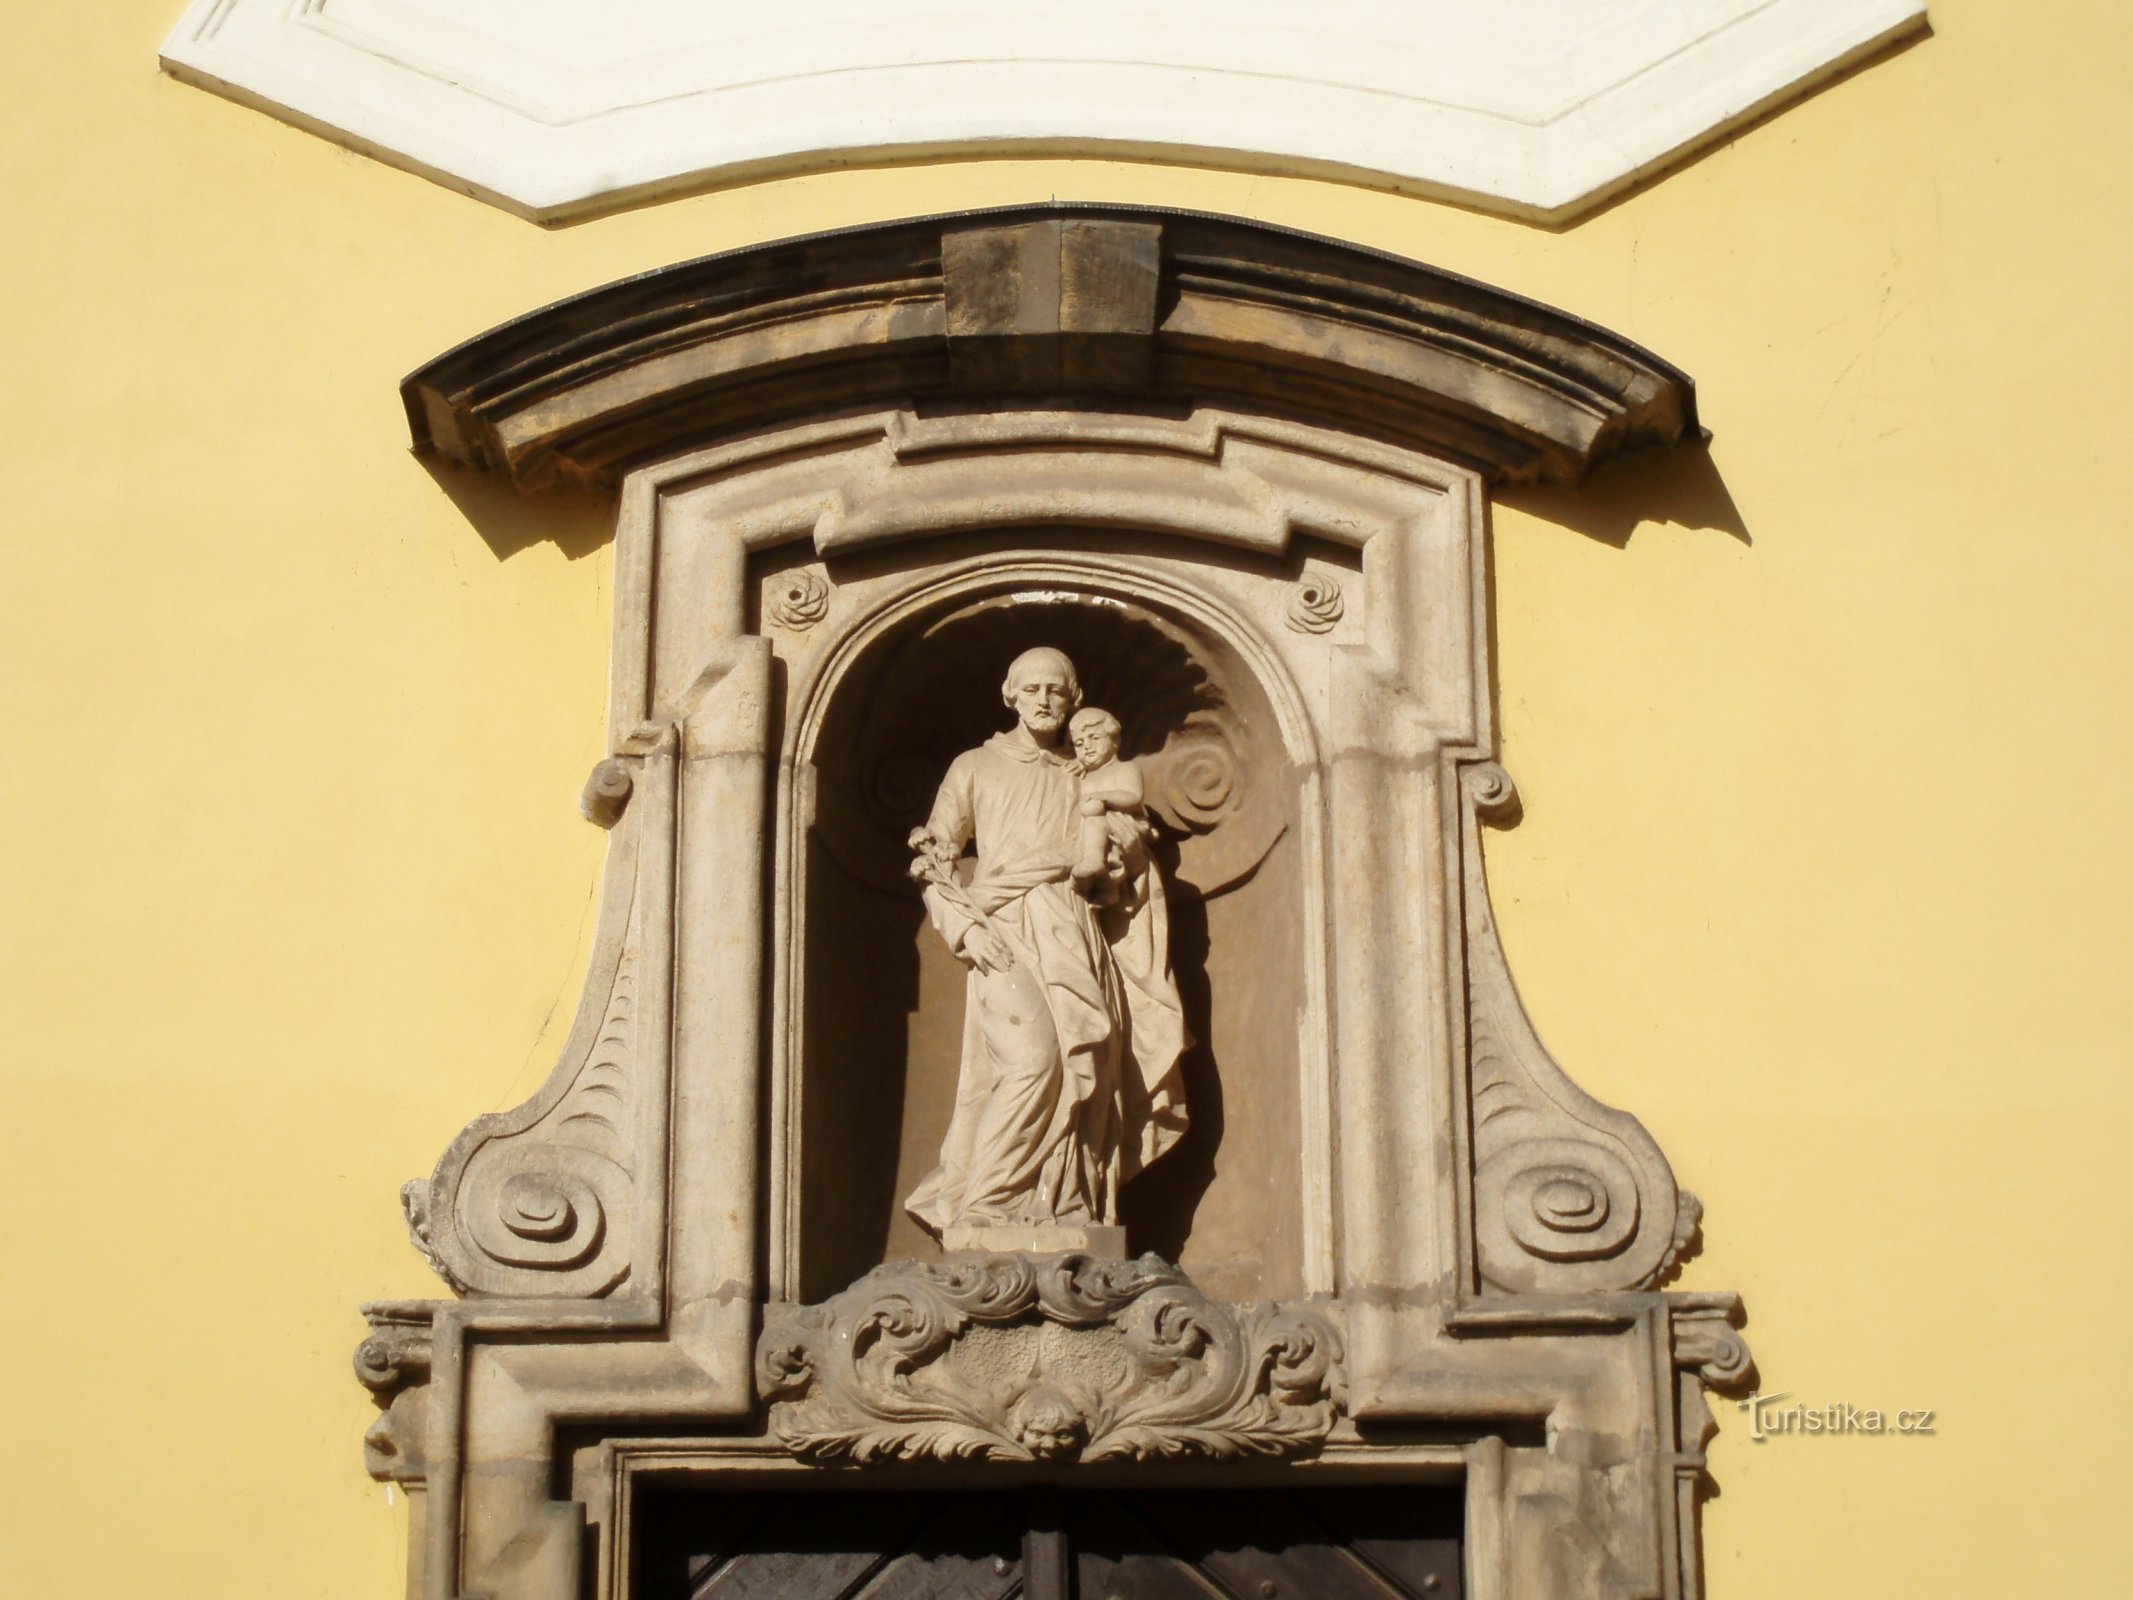 Raffigurazione di S. Giuseppe sopra l'ingresso della cappella dello stesso santo (Hradec Králové, 21.6.2009)